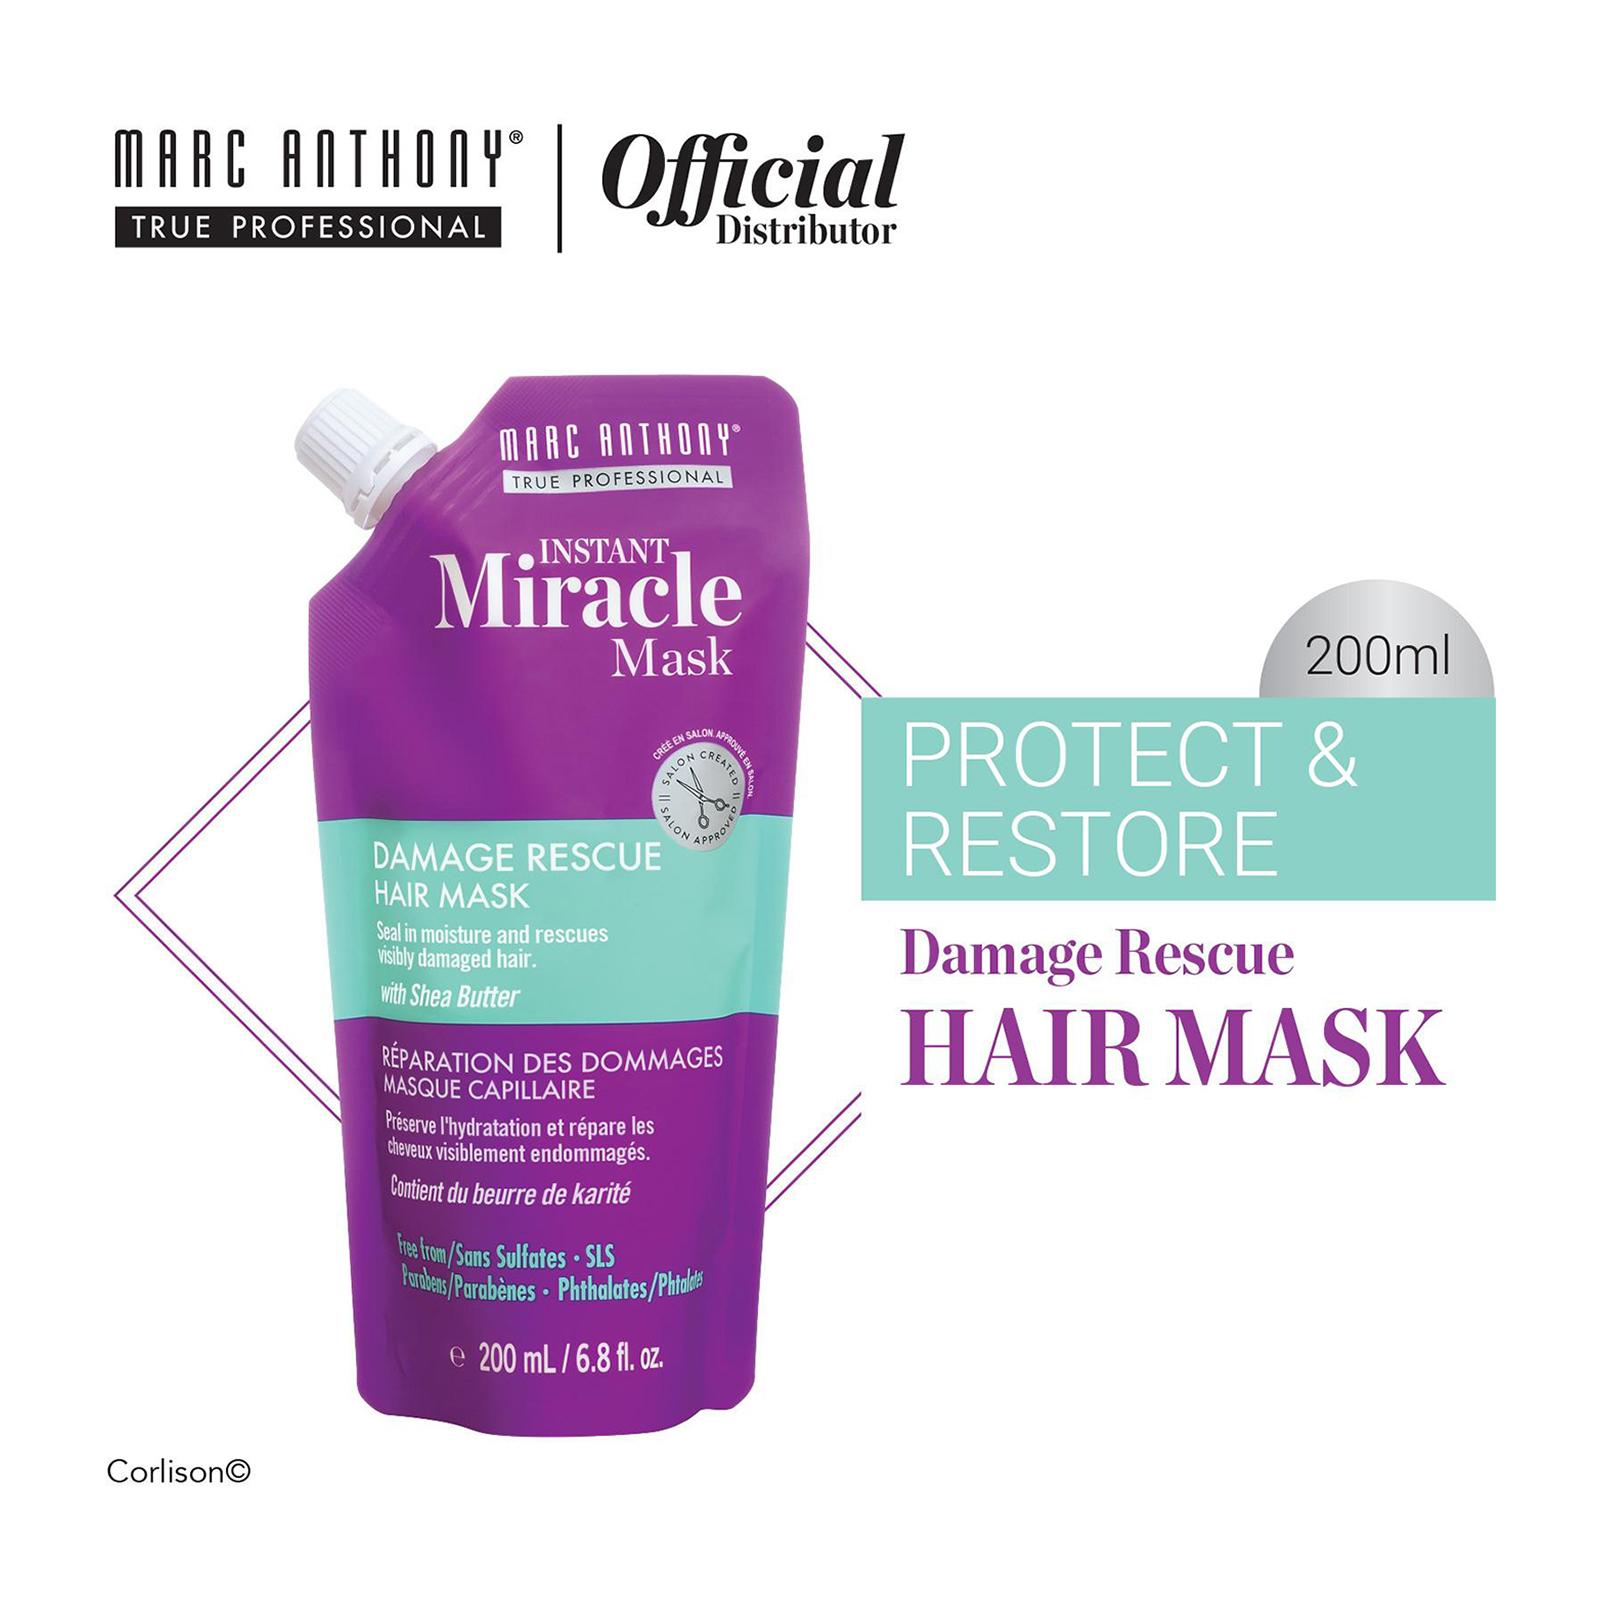 Marc Anthony Instant Miracle Mask Damage Rescue Hair Mask | Lazada Singapore